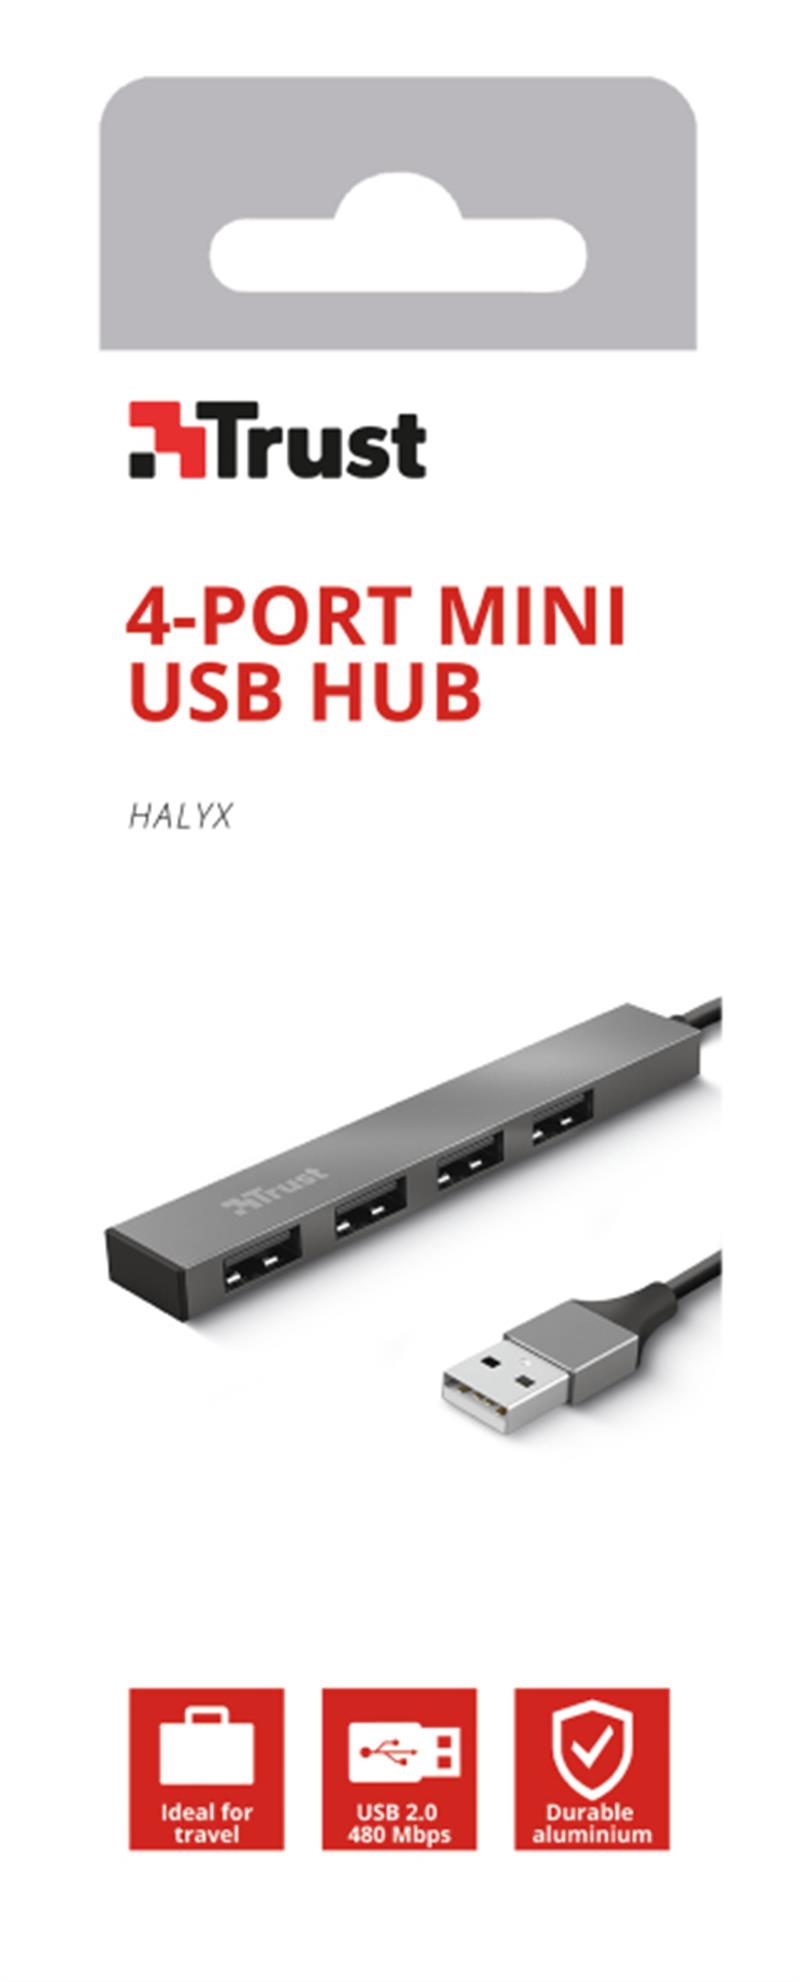 Trust Halyx USB 2.0 480 Mbit/s Aluminium